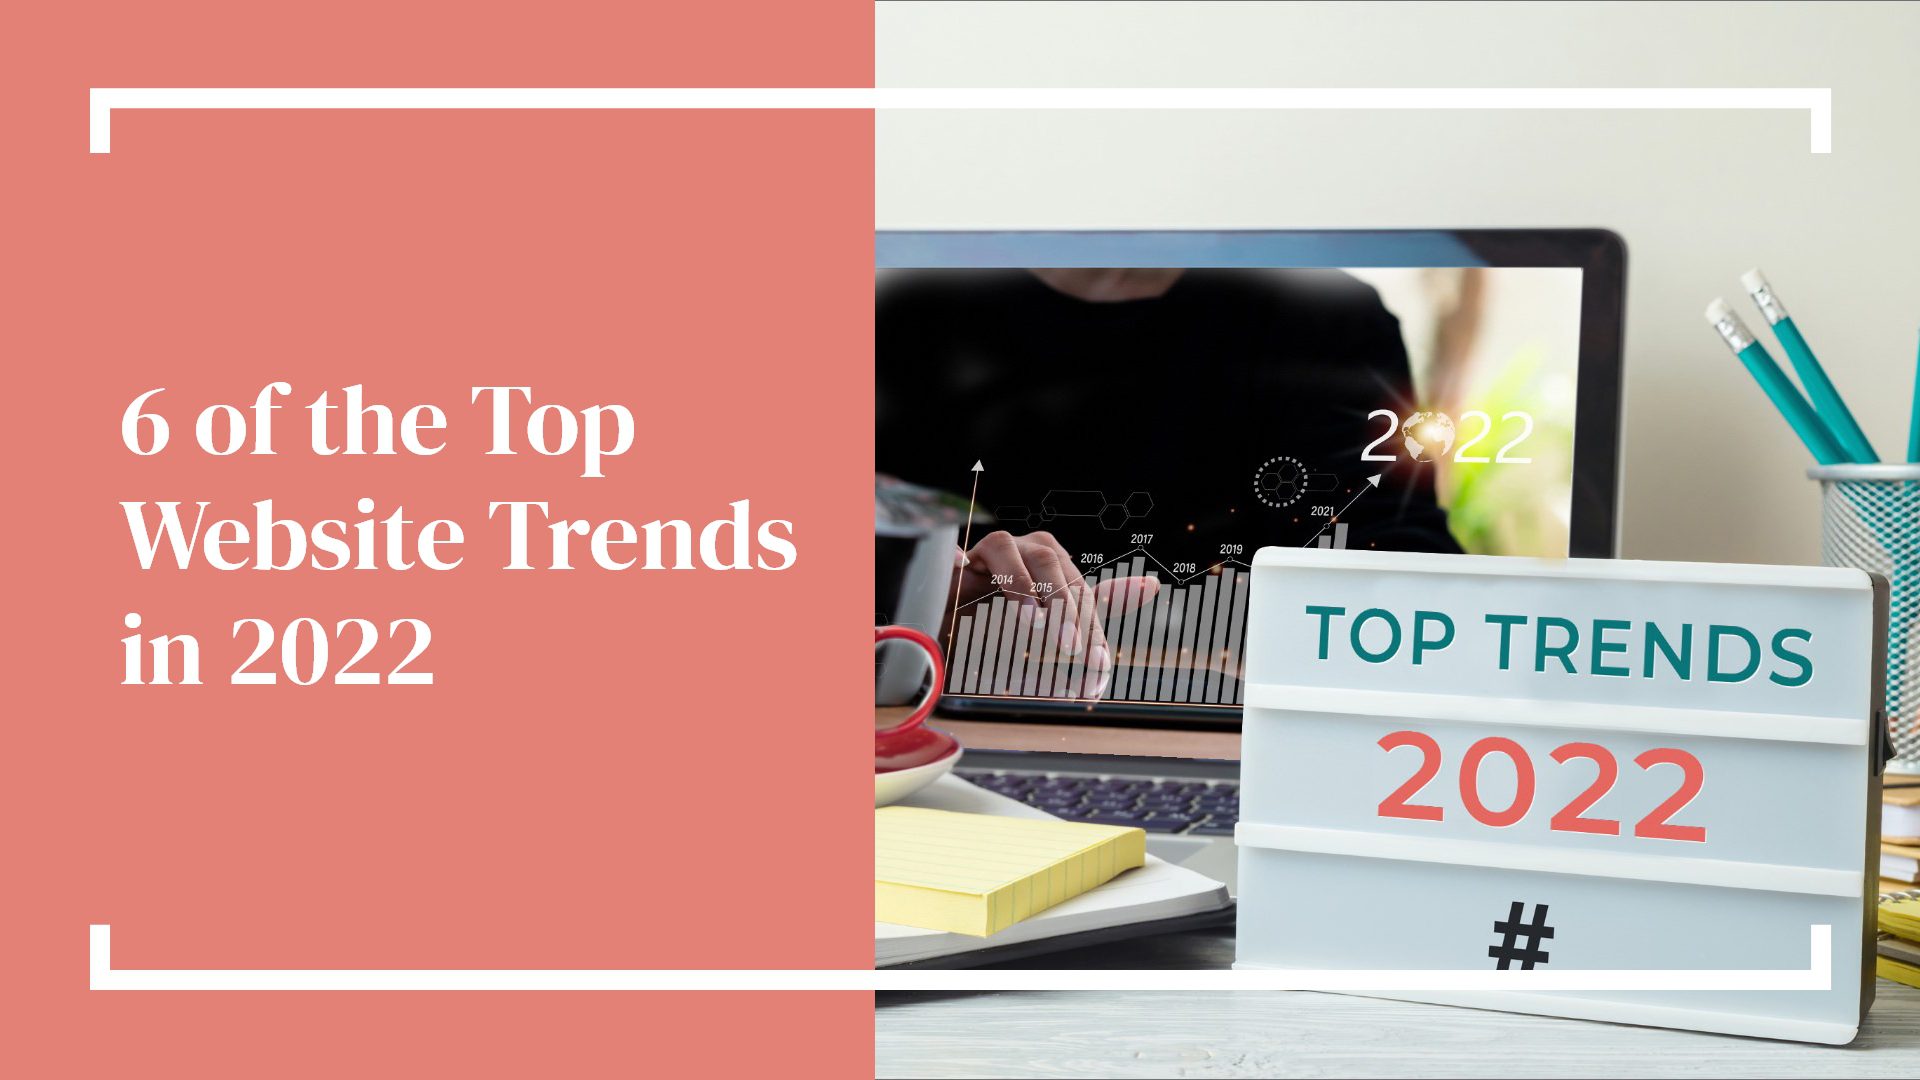 6 of the Top Website Trends in 2022